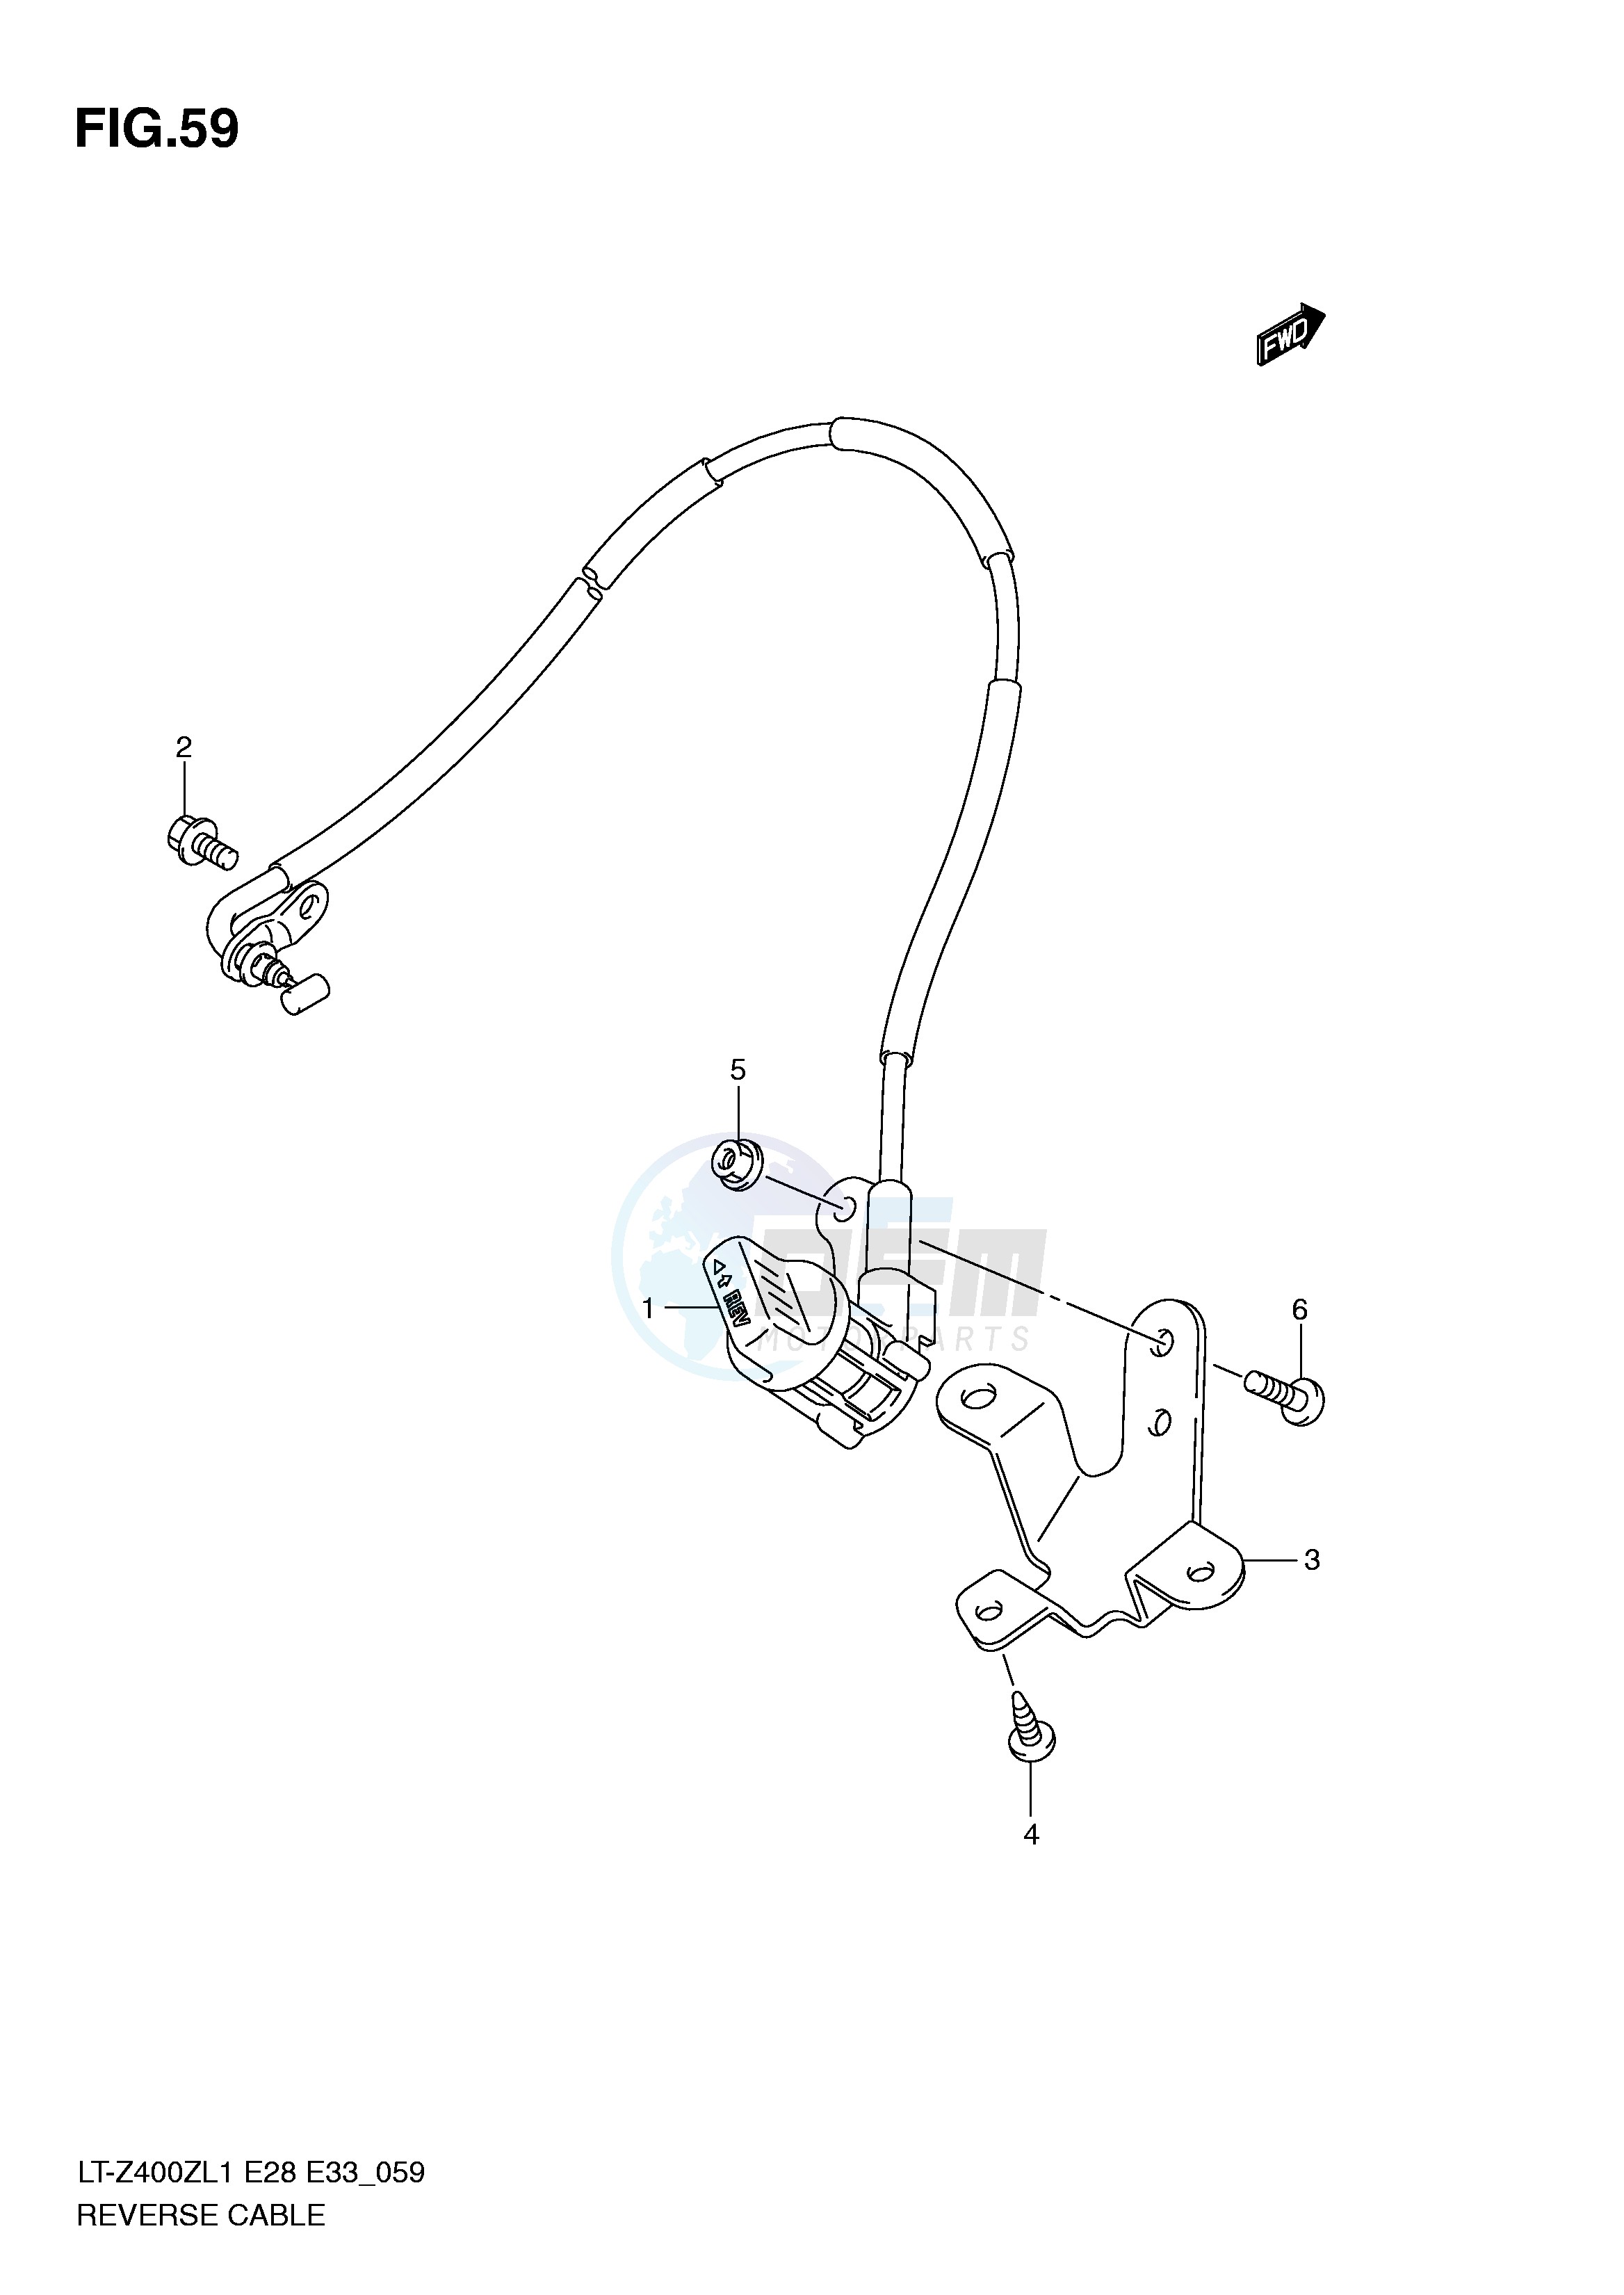 REVERSE CABLE (LT-Z400L1 E28) blueprint